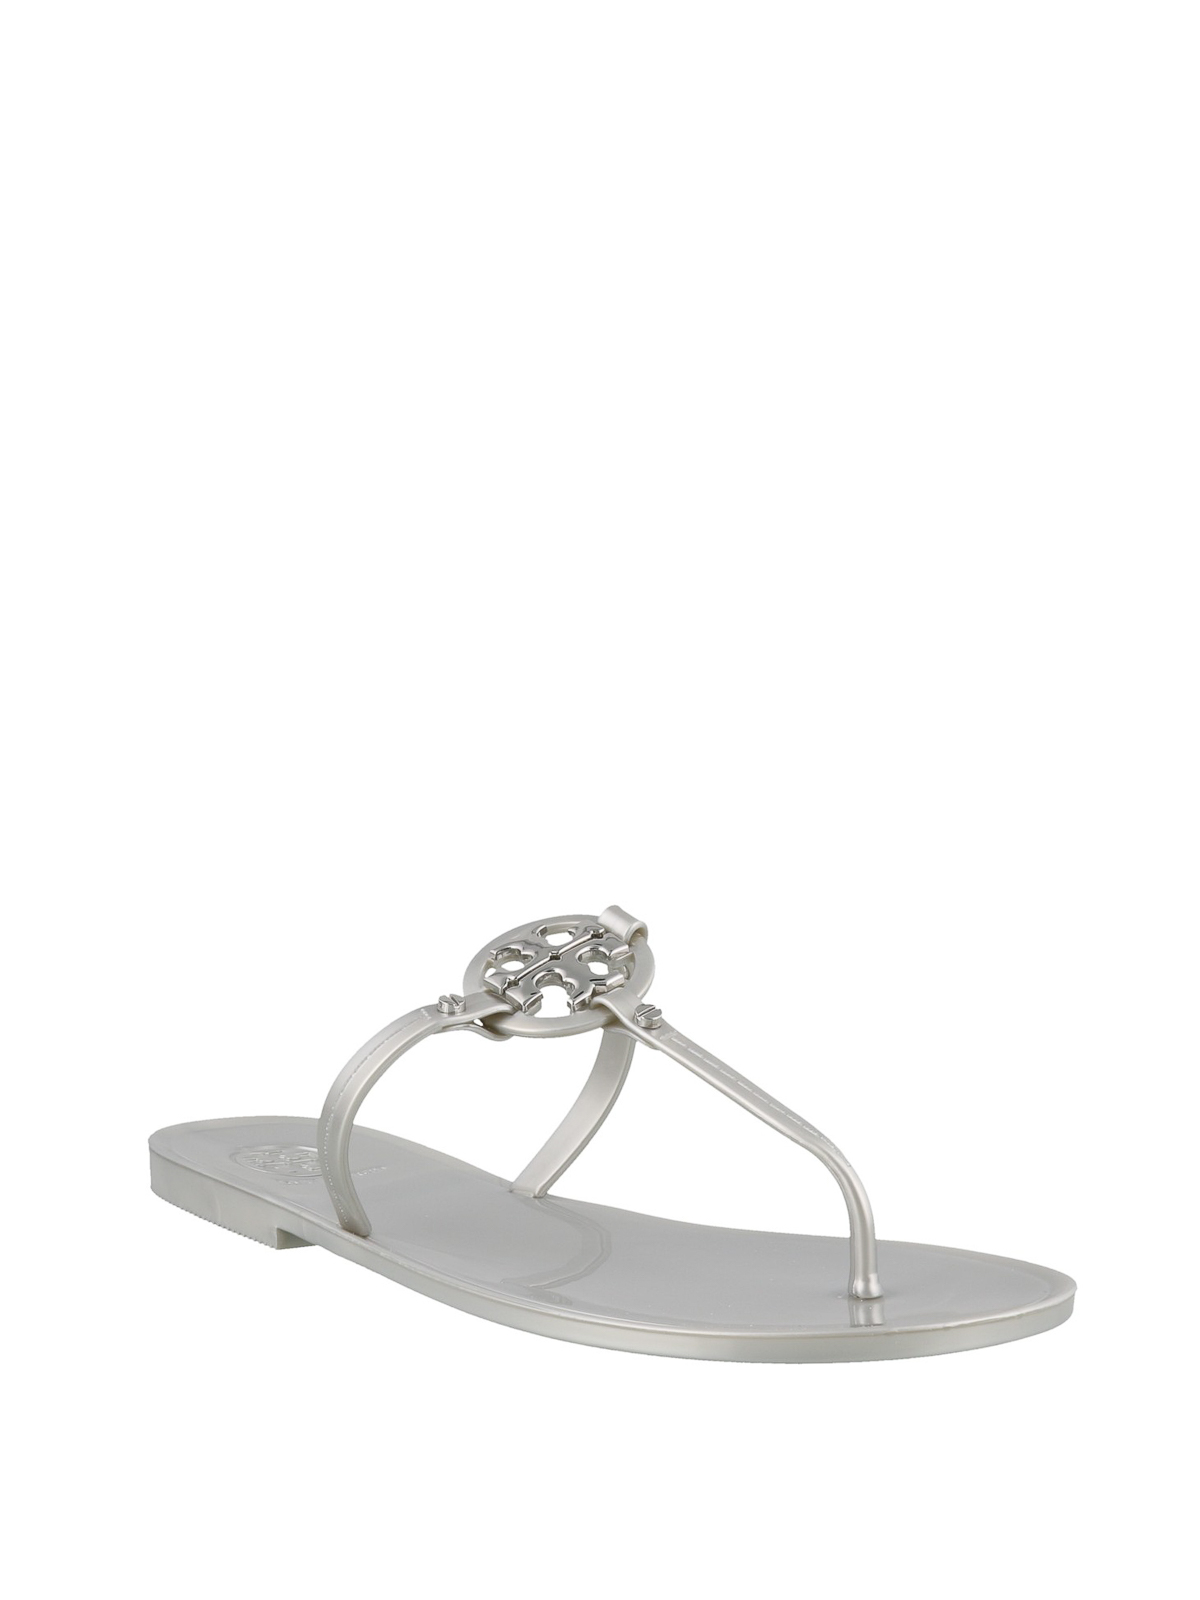 Flip flops Tory Burch - Mini Miller Jelly thong sandals - 51148678040